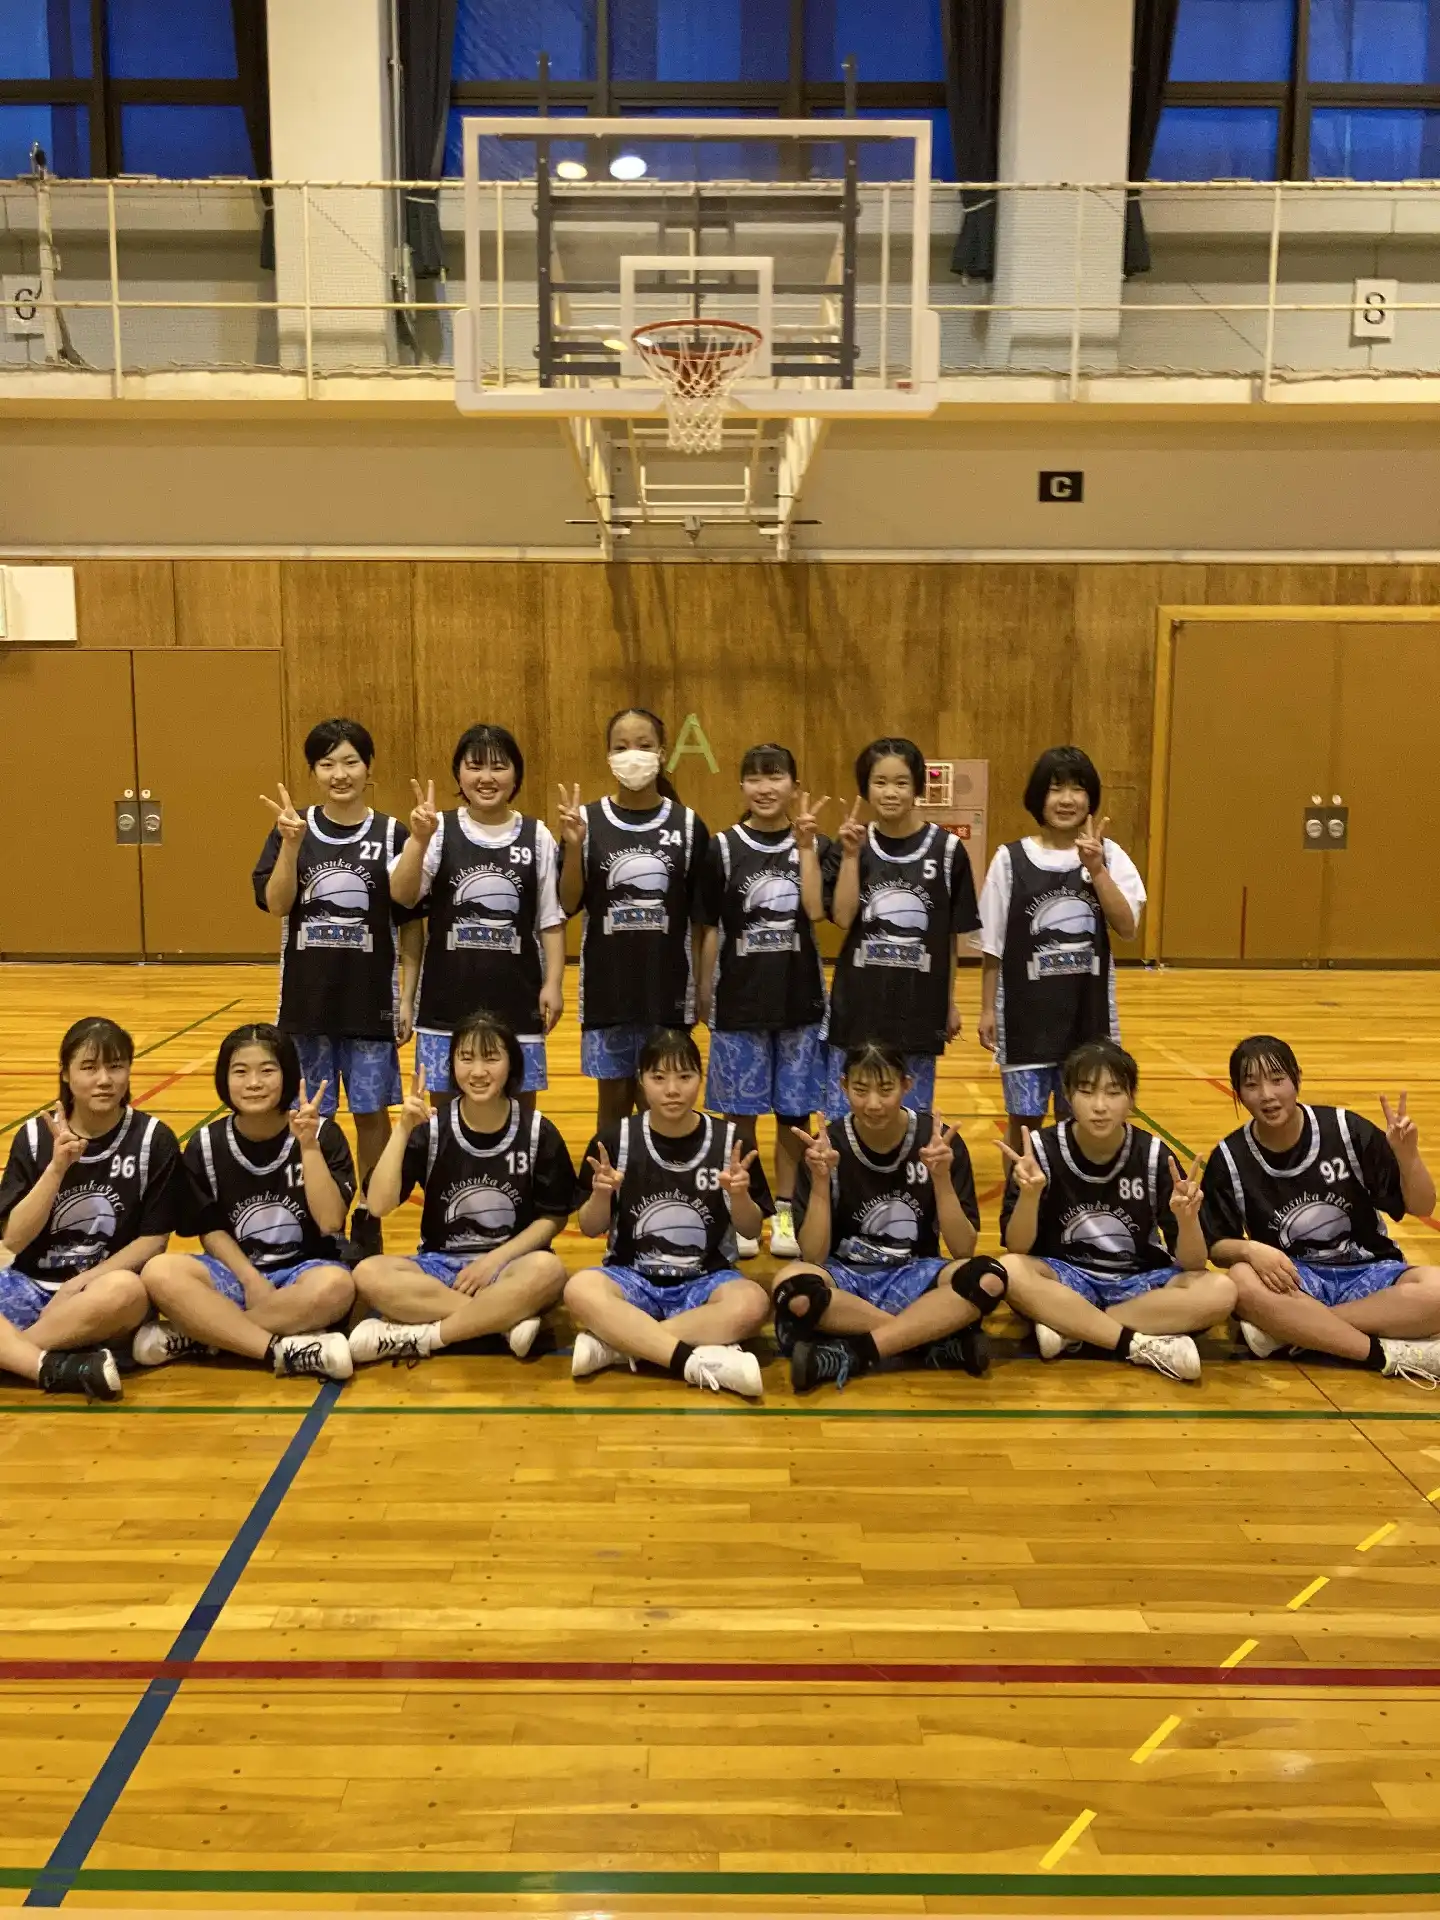 ギャラリー Yokosuka c Nexus 横須賀市を拠点に活動する中学生を対象としたバスケットボールクラブ